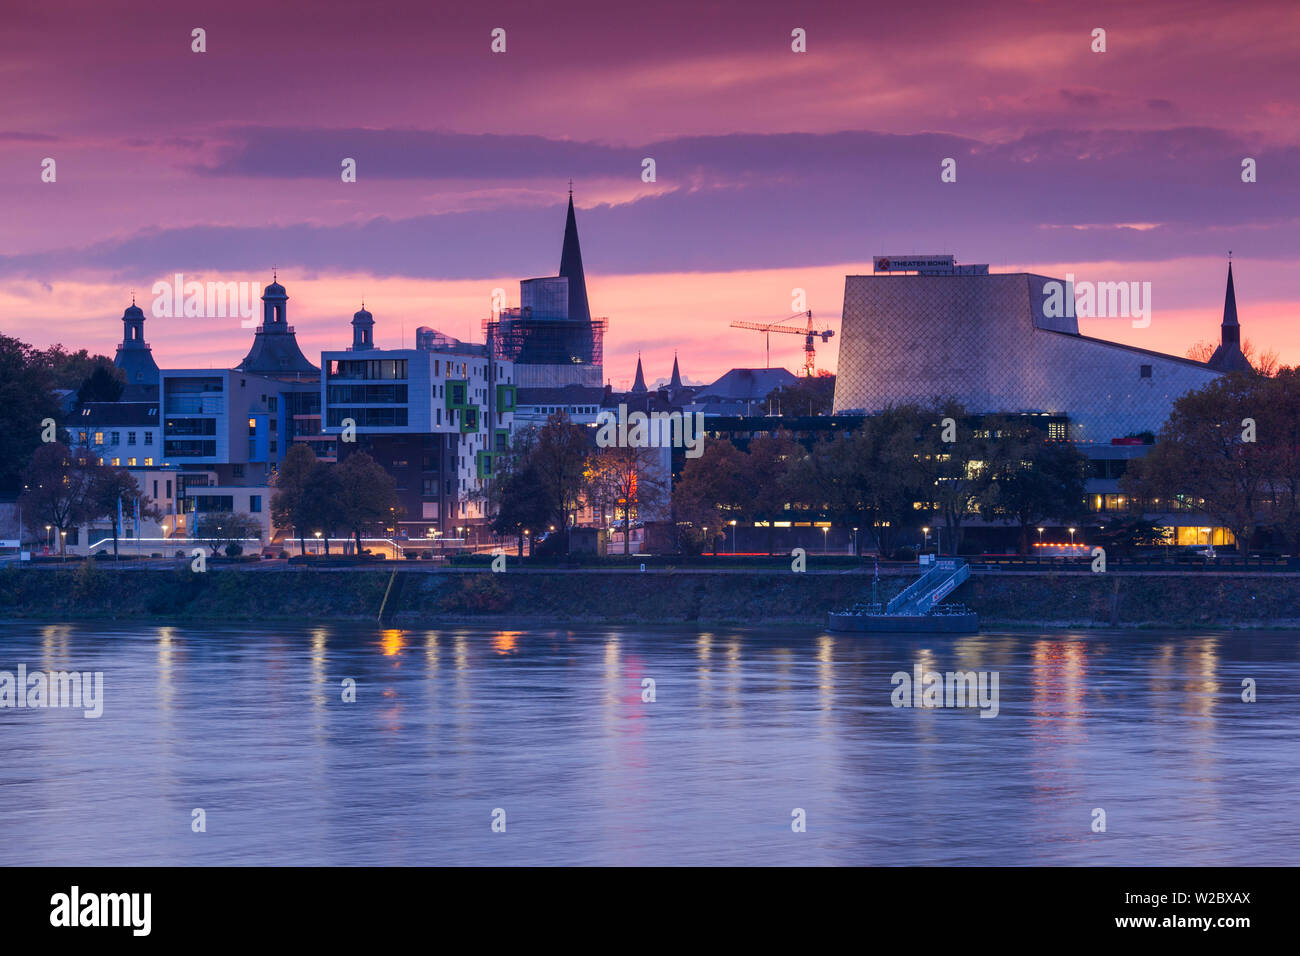 Alemania, Nordrhein-Westfalen, Bonn, Rhein Riverfront y el edificio de la Ópera de Bonn, el anochecer Foto de stock